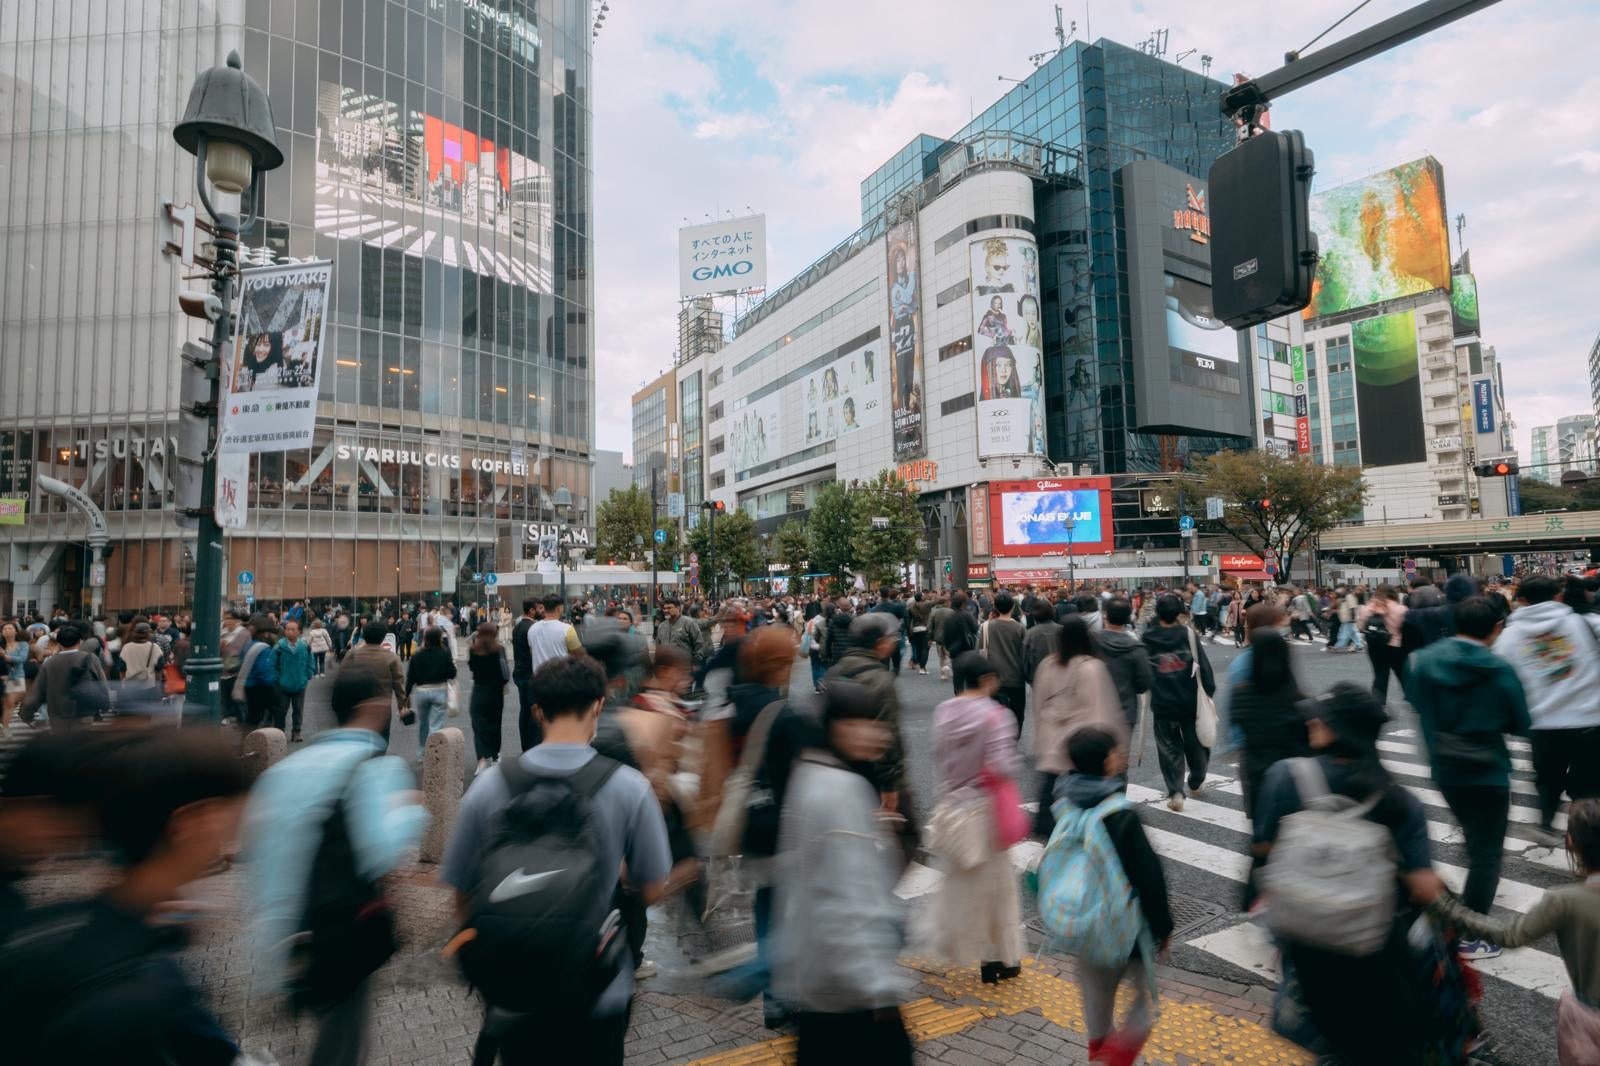 「渋谷スクランブル交差点を渡る歩行者の様子」の写真